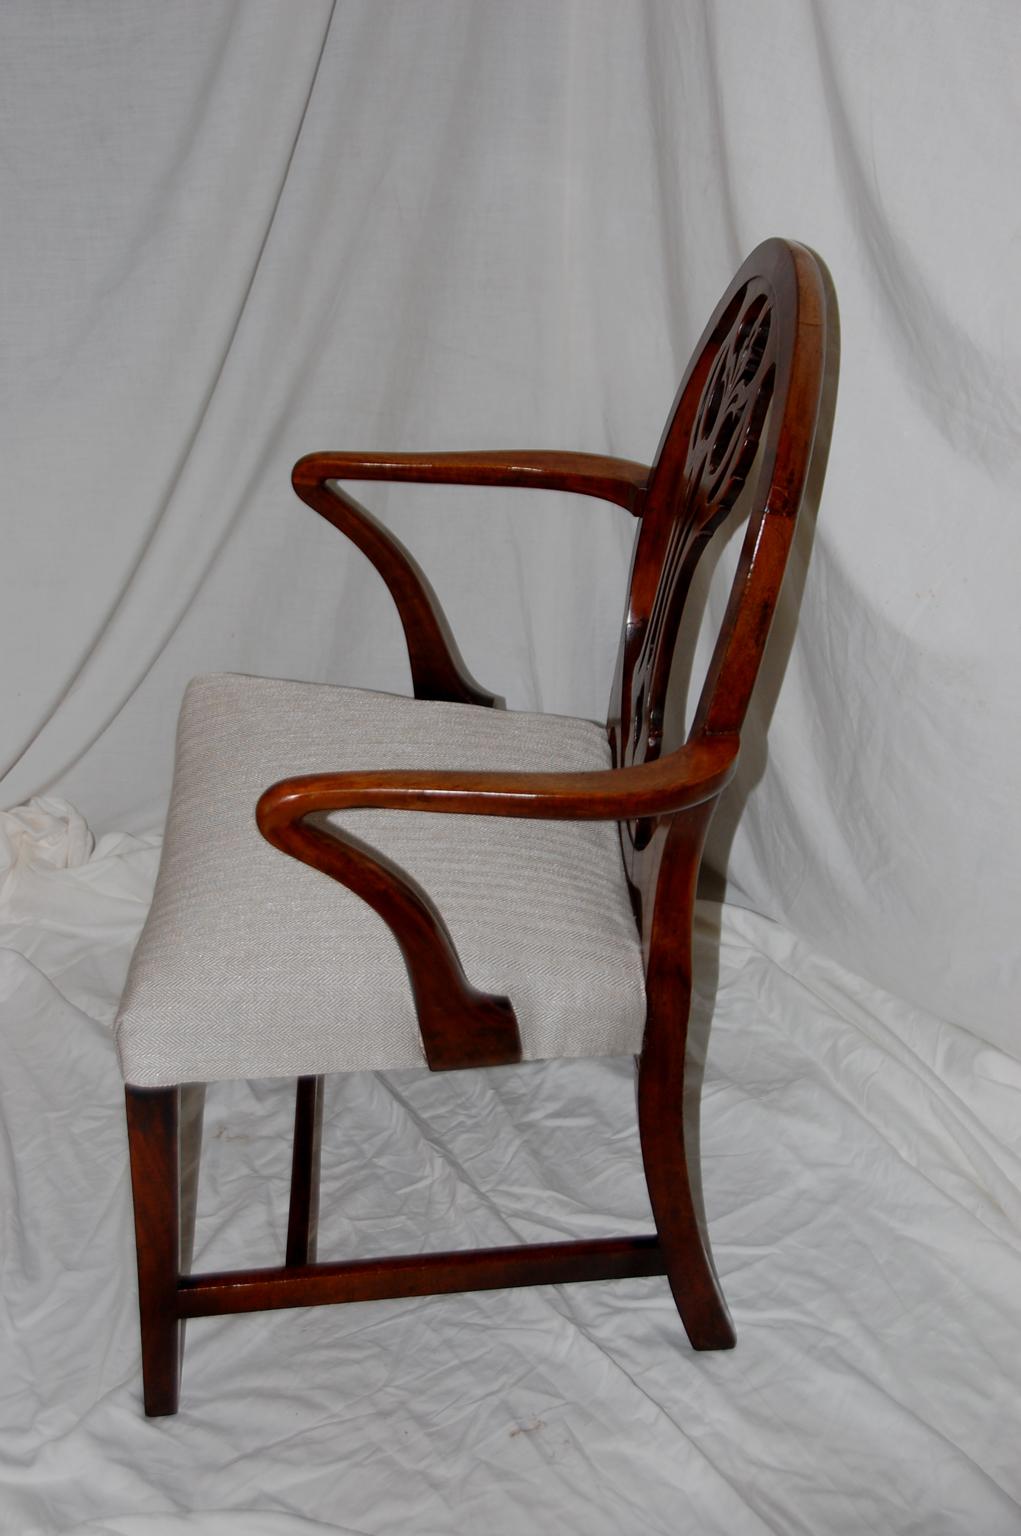 Englischer georgianischer Mahagoni-Sessel der Hepplewhite-Periode mit geschnitztem Splat in einer ovalen Rückenlehne, Hirtenstab-Armen, verjüngten Beinen, Sattelsitz, um 1790 $1.885.